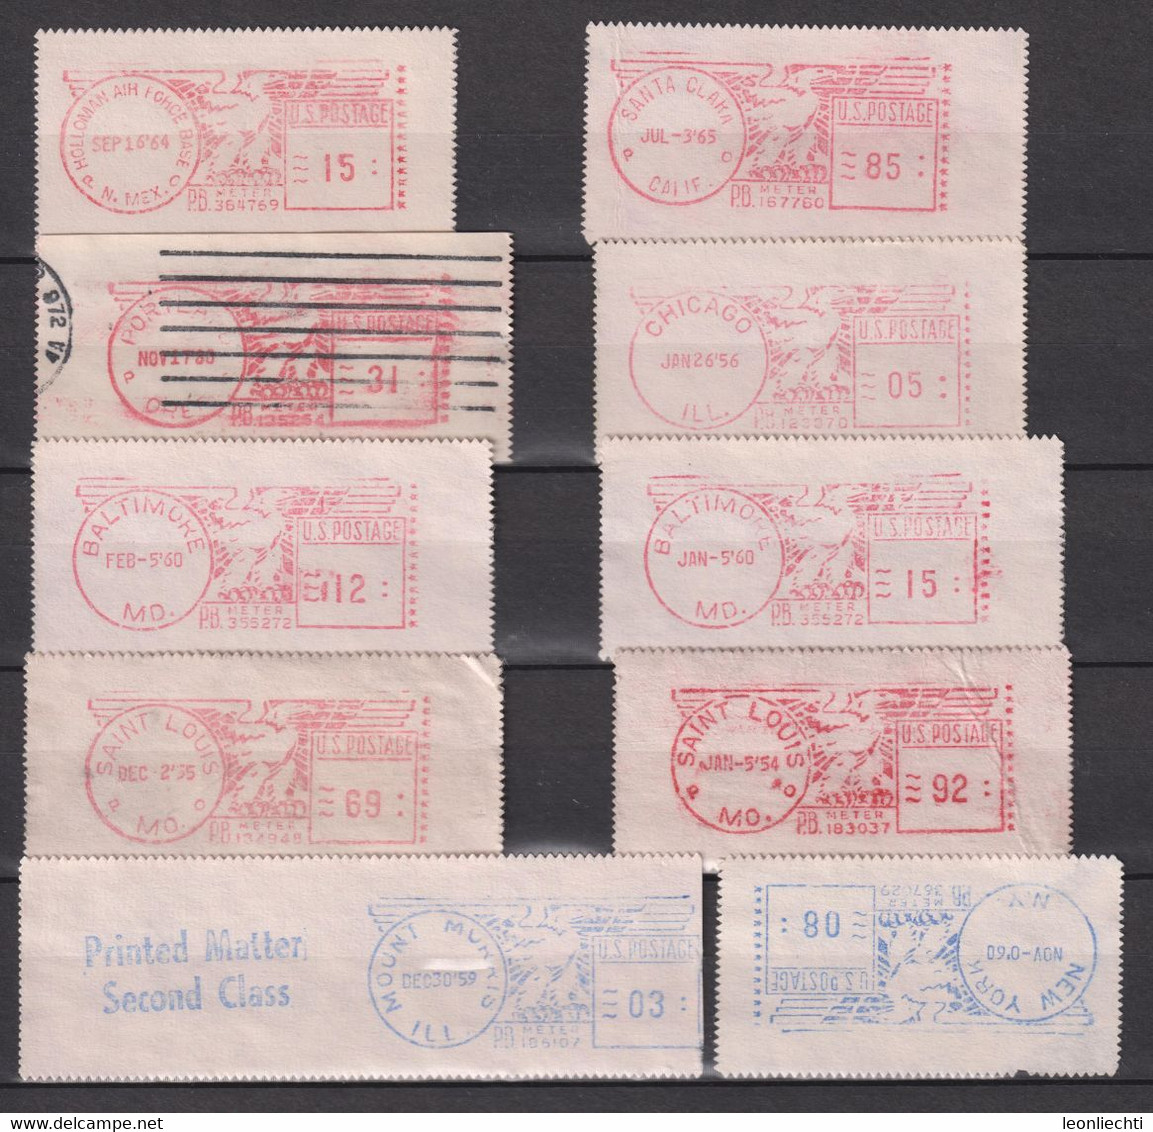 Fragment Meter Stamp 10 Stk. - Timbres De Distributeurs [ATM]